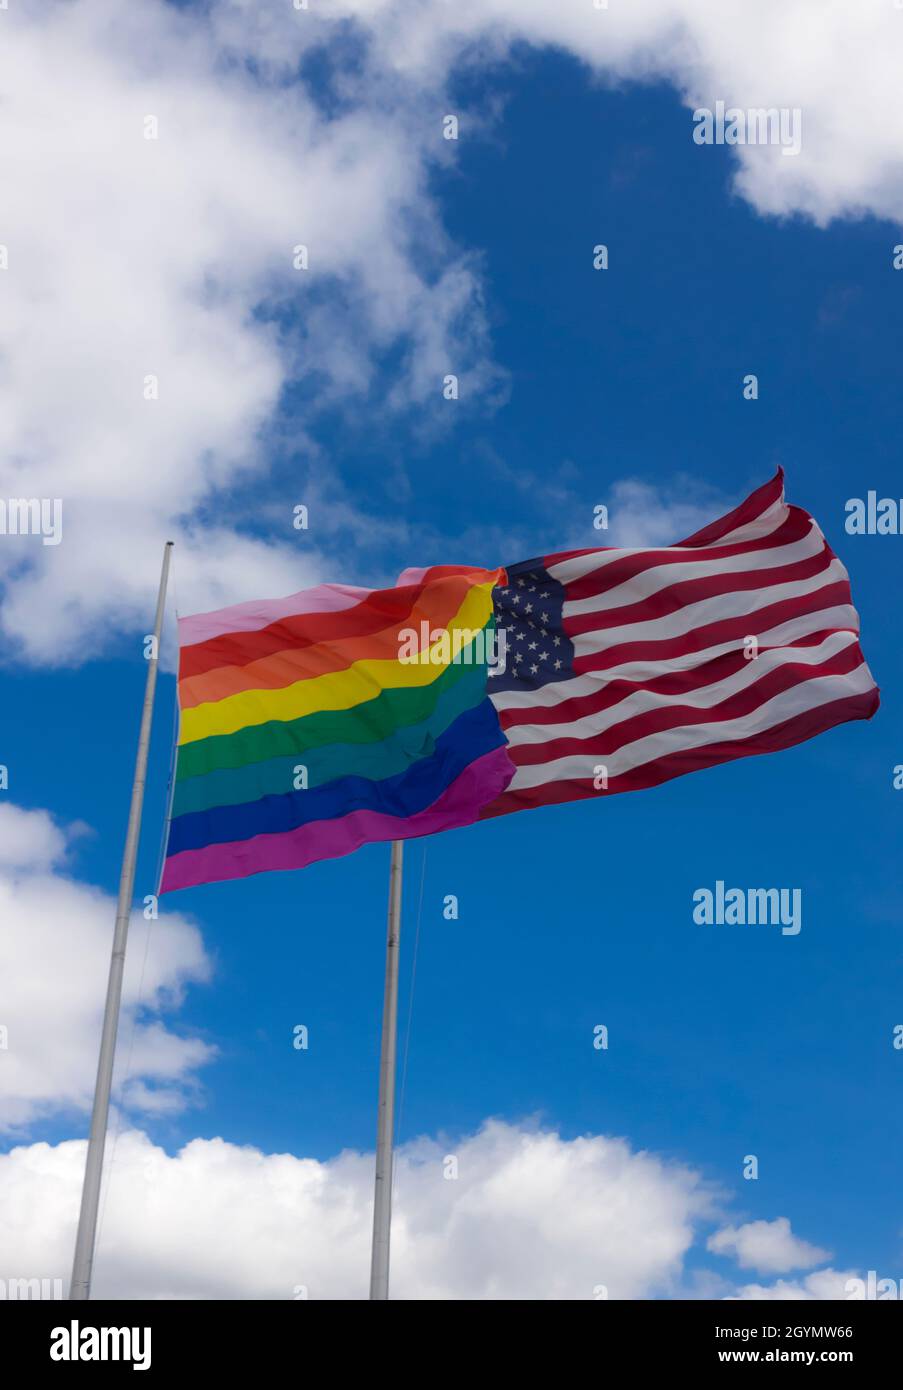 Bandiera arcobaleno/bandiera gay Pride (LGBT) che vola accanto alla bandiera americana su Cherry Grove, Fire Island, New York, Stati Uniti d'America. Foto Stock